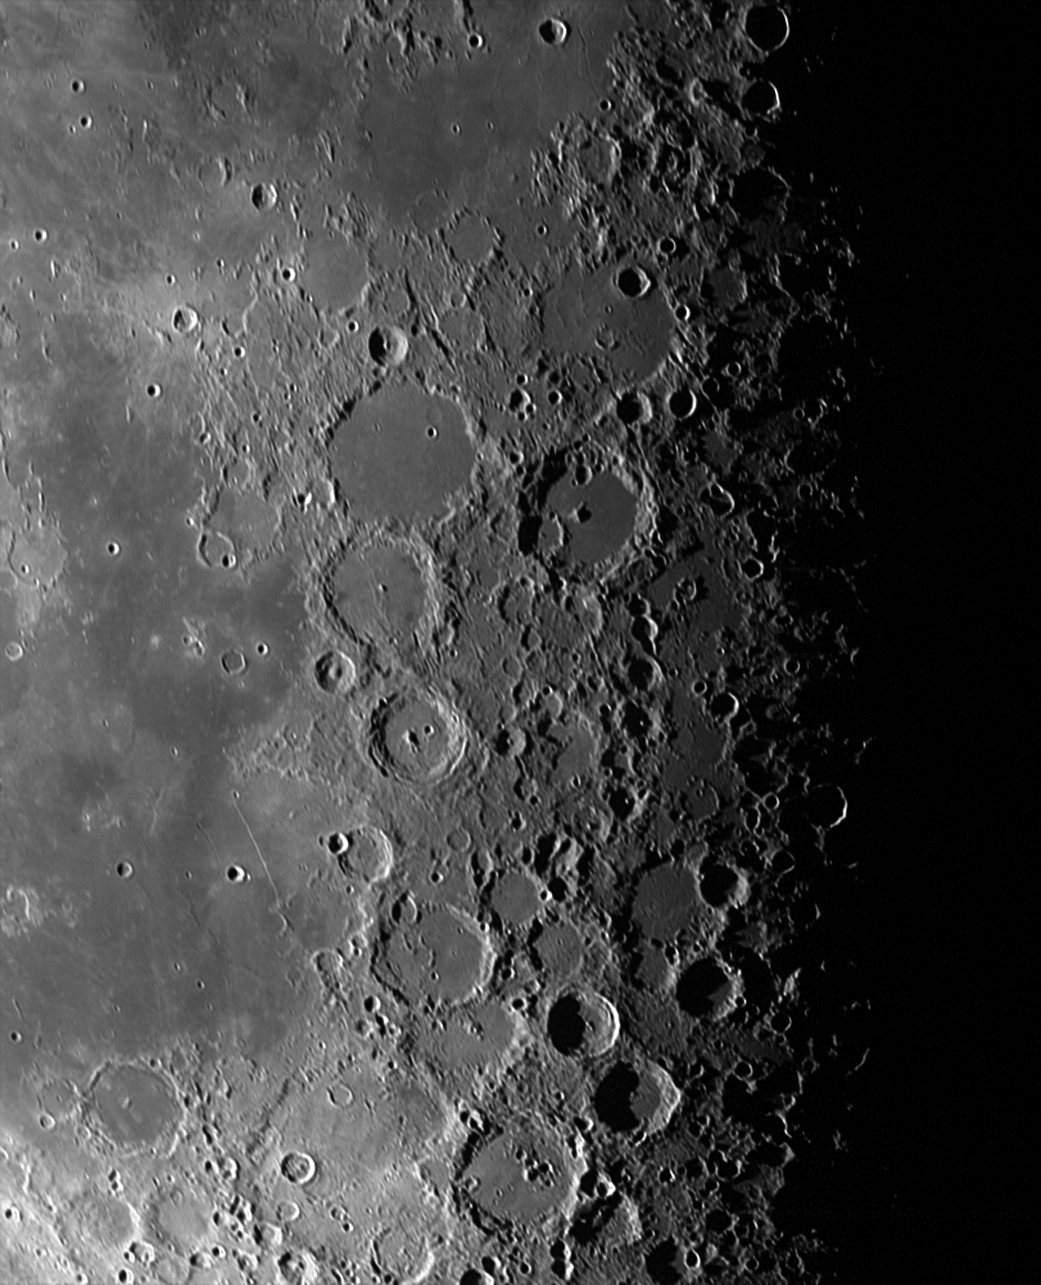 На этом изображении видны Лунные нагорья. Кредит изображения: НАСА.